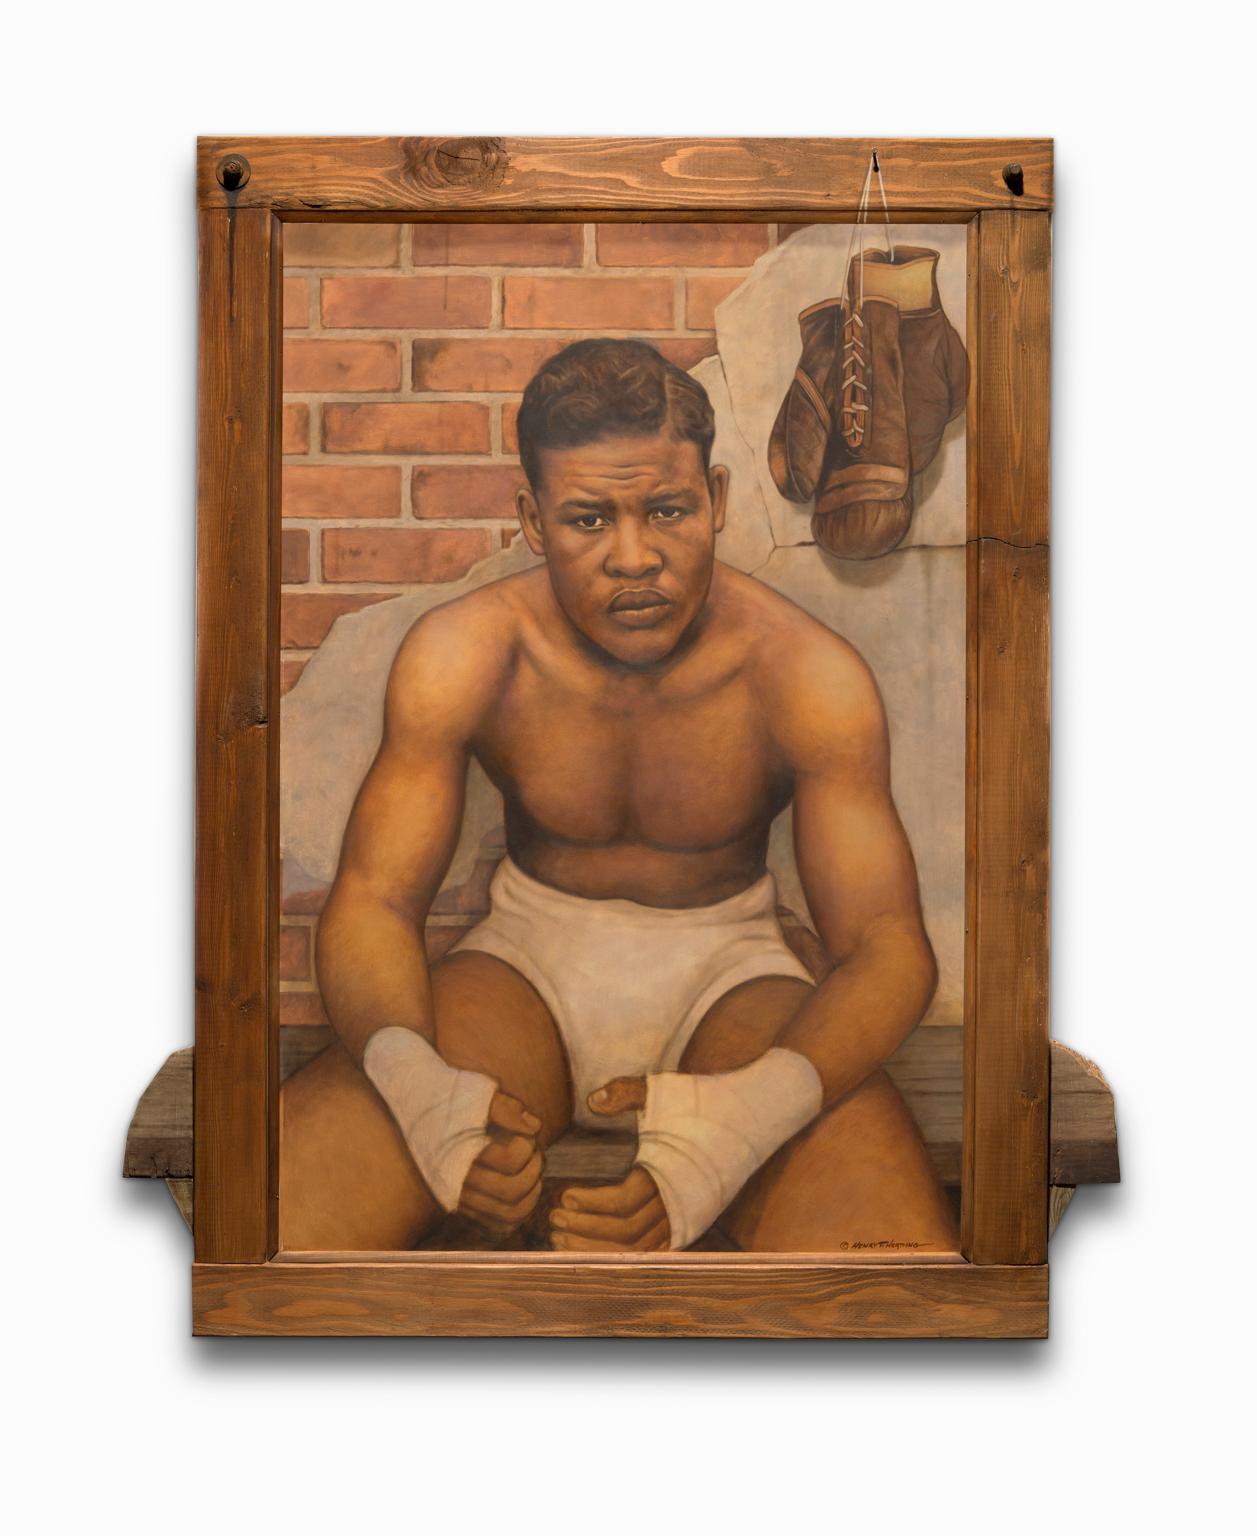 Henry Heading Portrait Painting – ""Joe Louis" Öl auf Karton mit Mischtechnik, ikonisches Porträt, afroamerikanischer Abstammung